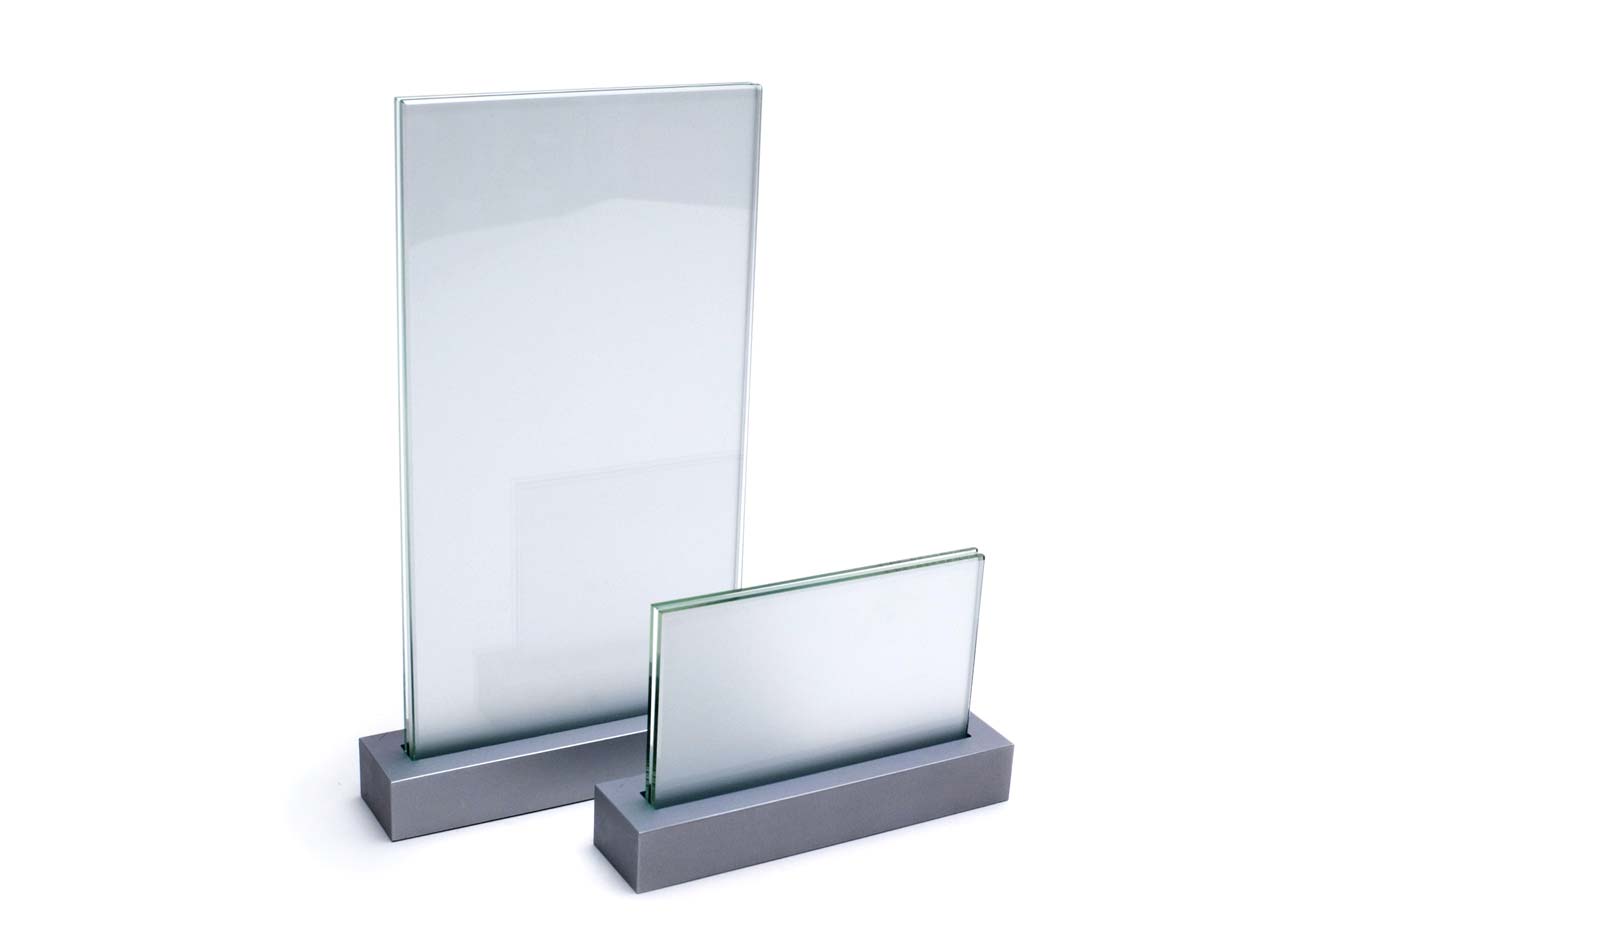 VIGO Tischaufsteller, beide Glasgrößen, unbedruckte Darstellung mit opakem Beschriftungsträger